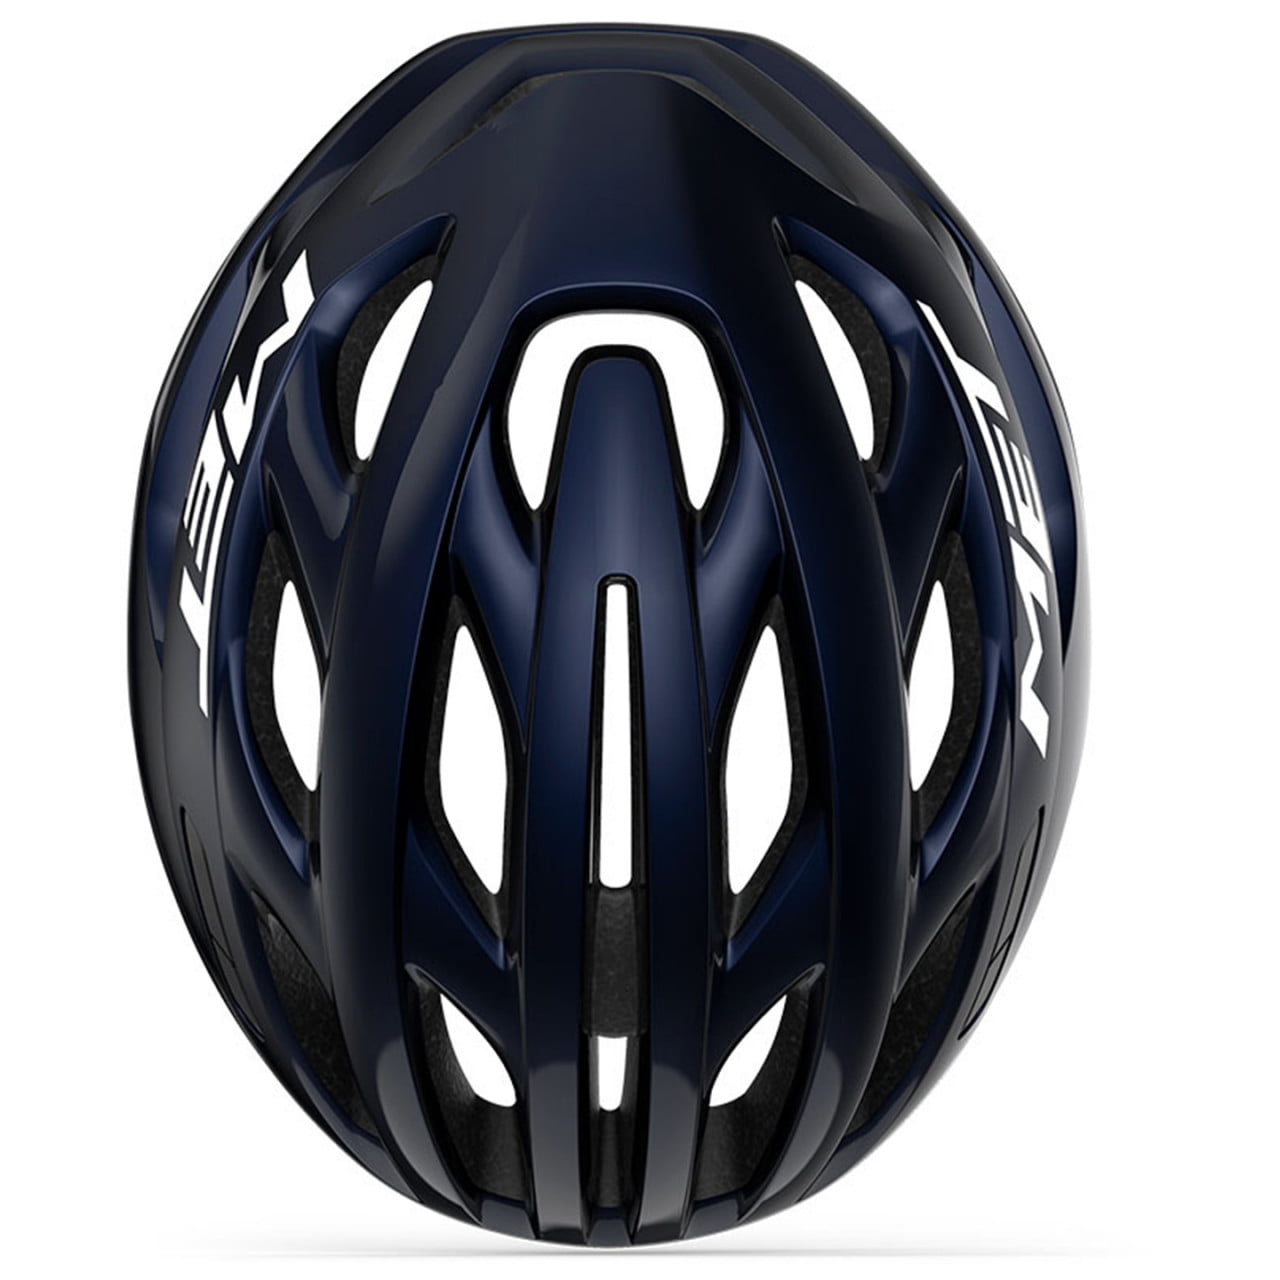 Estro Mips Road Bike Helmet